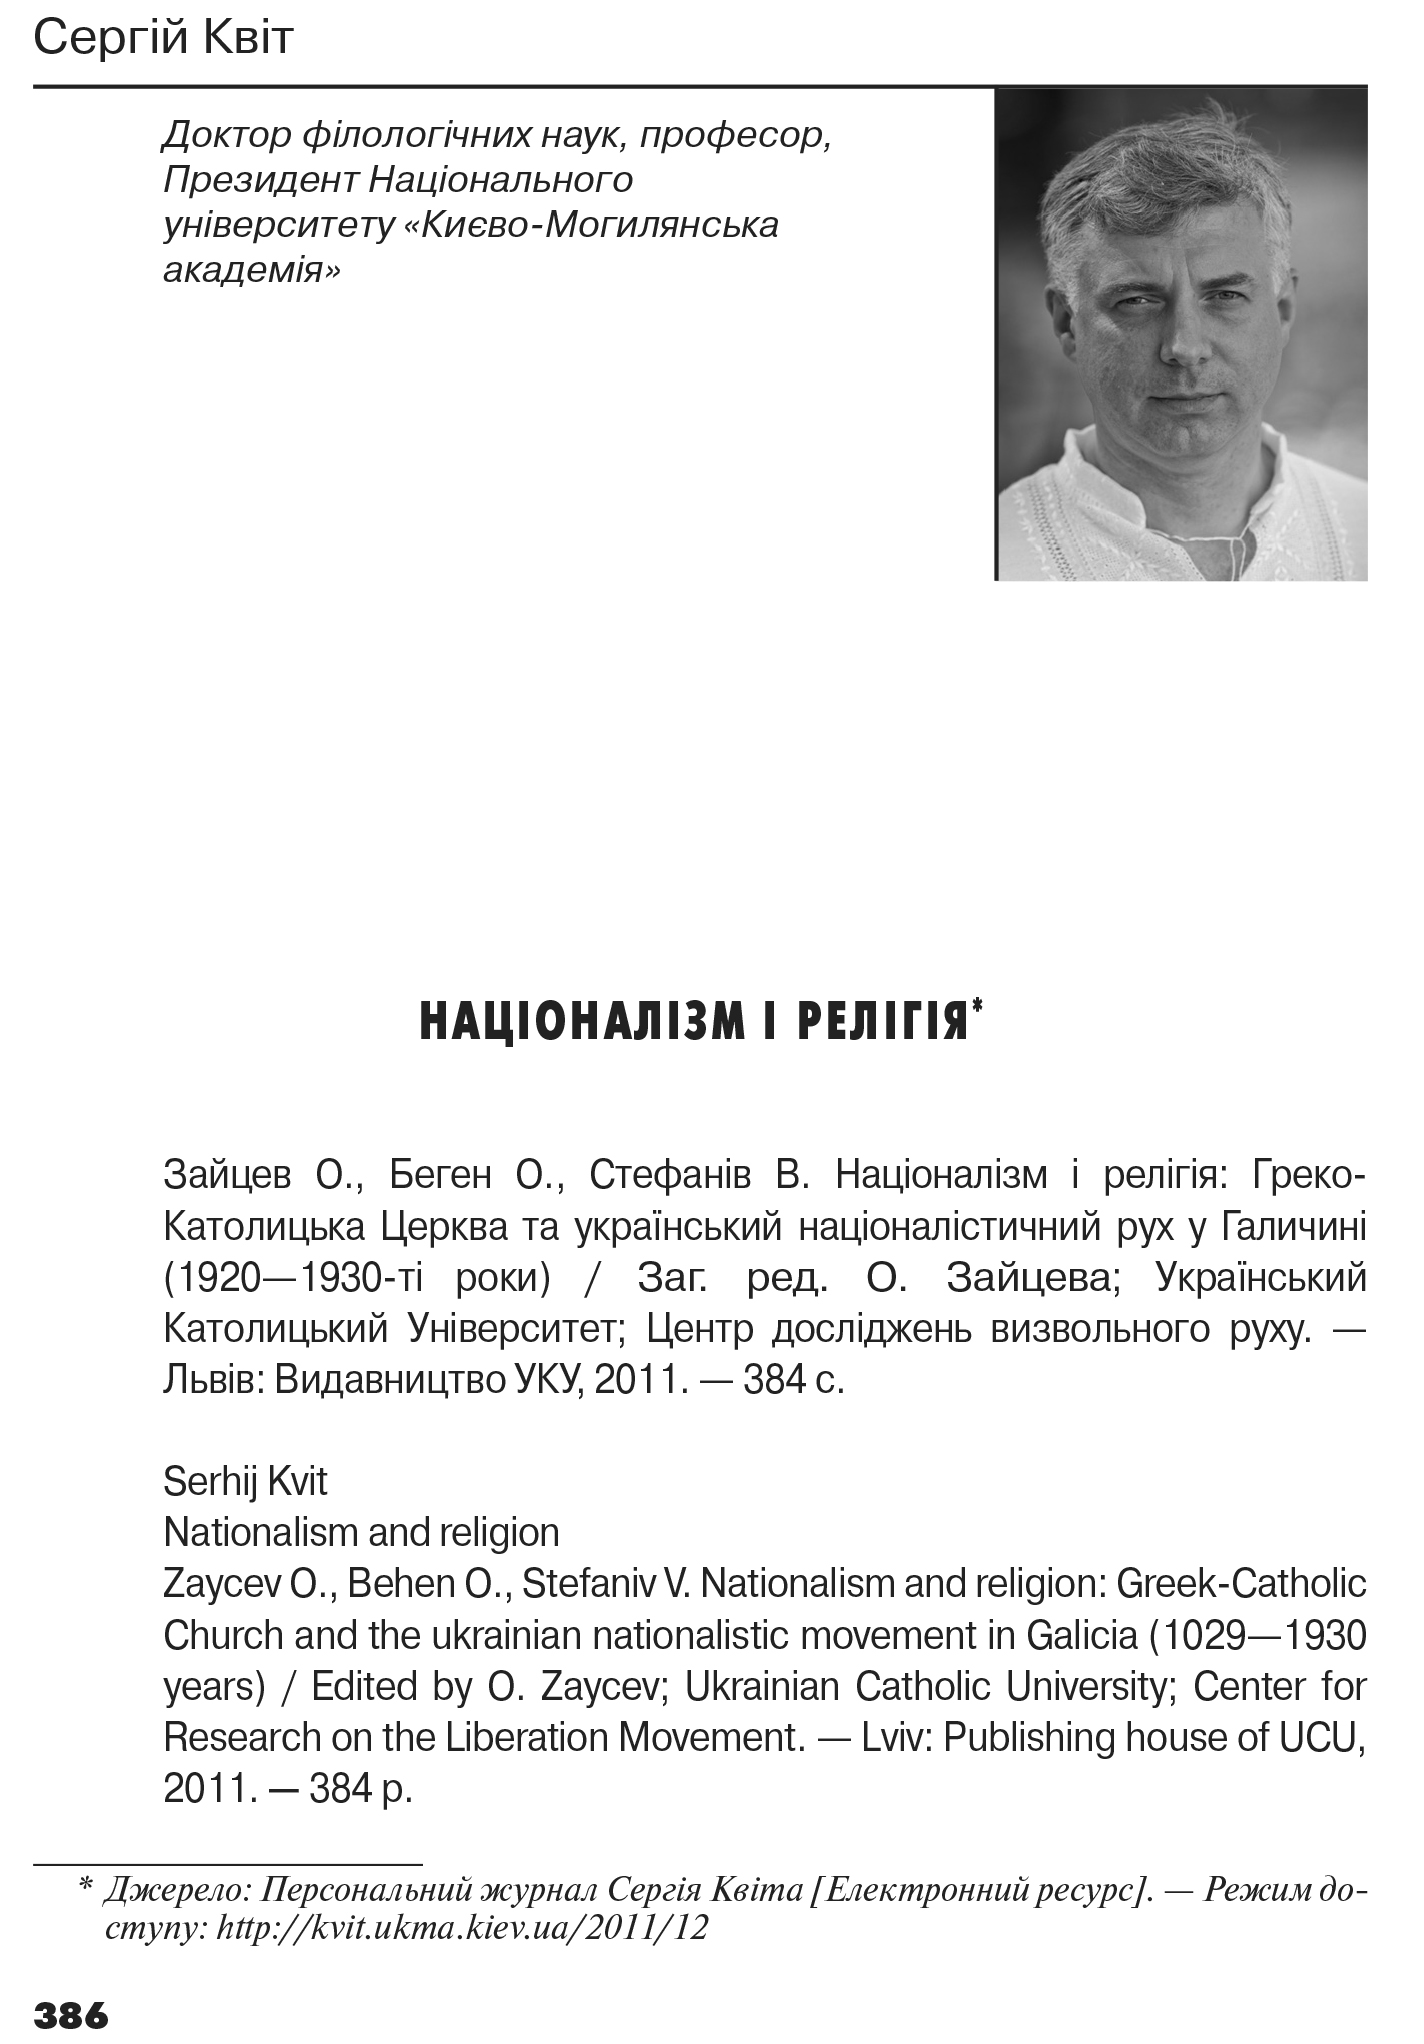 Український визвольний рух №17, ст. 386 - 394